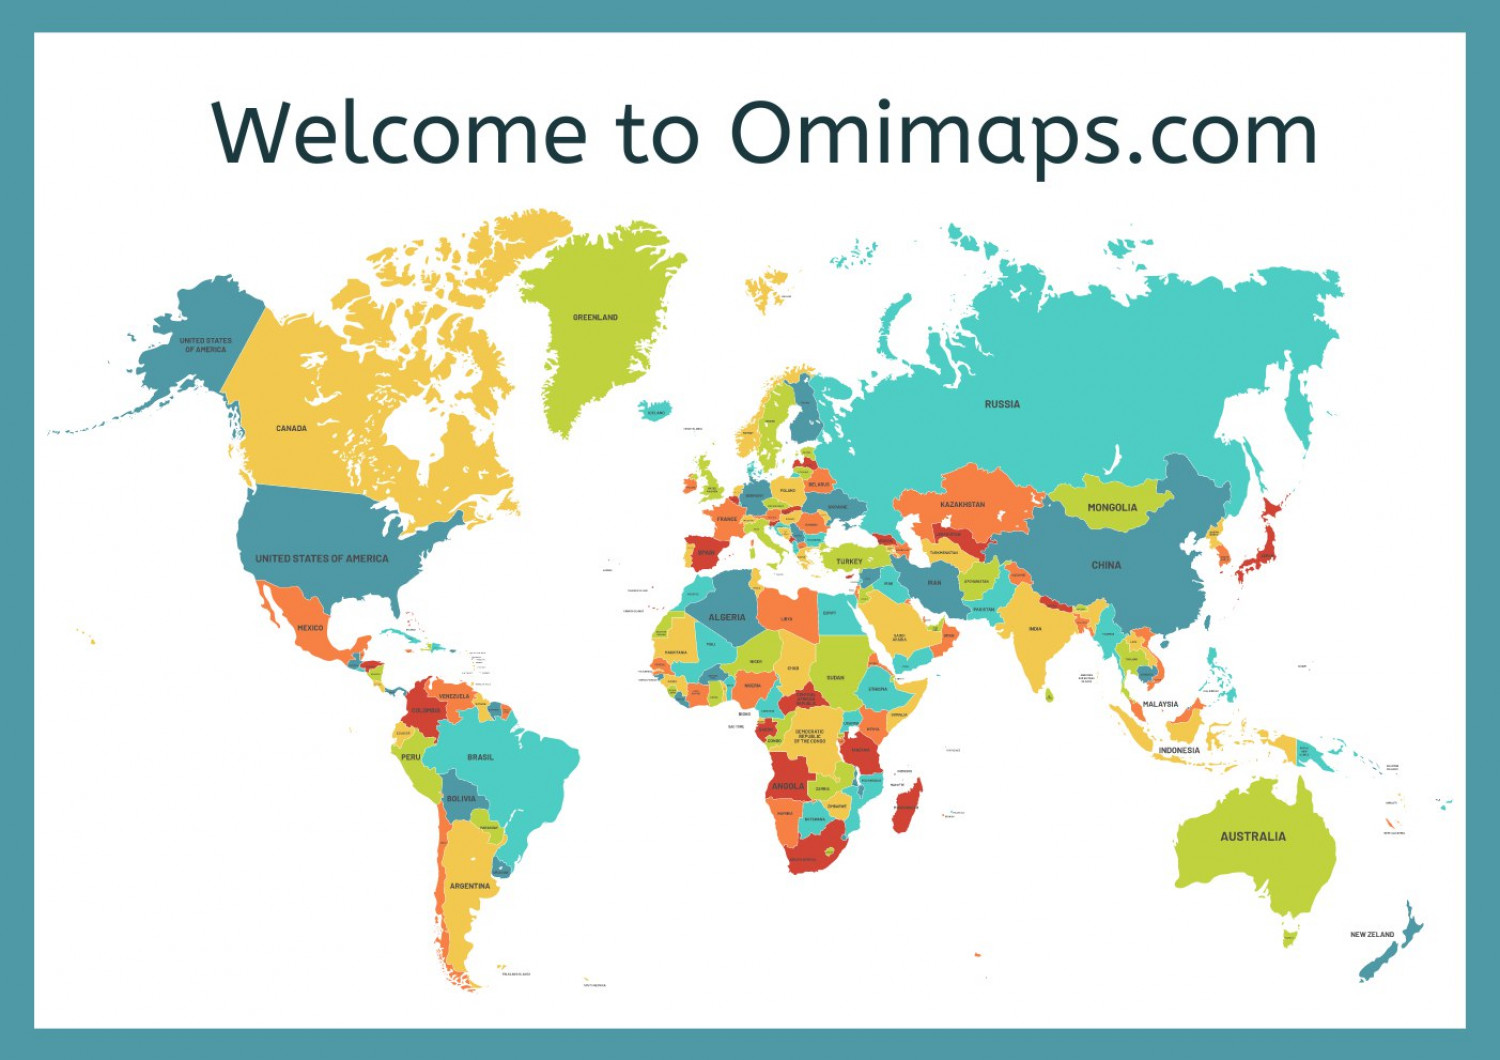 Omimaps.com Infographic